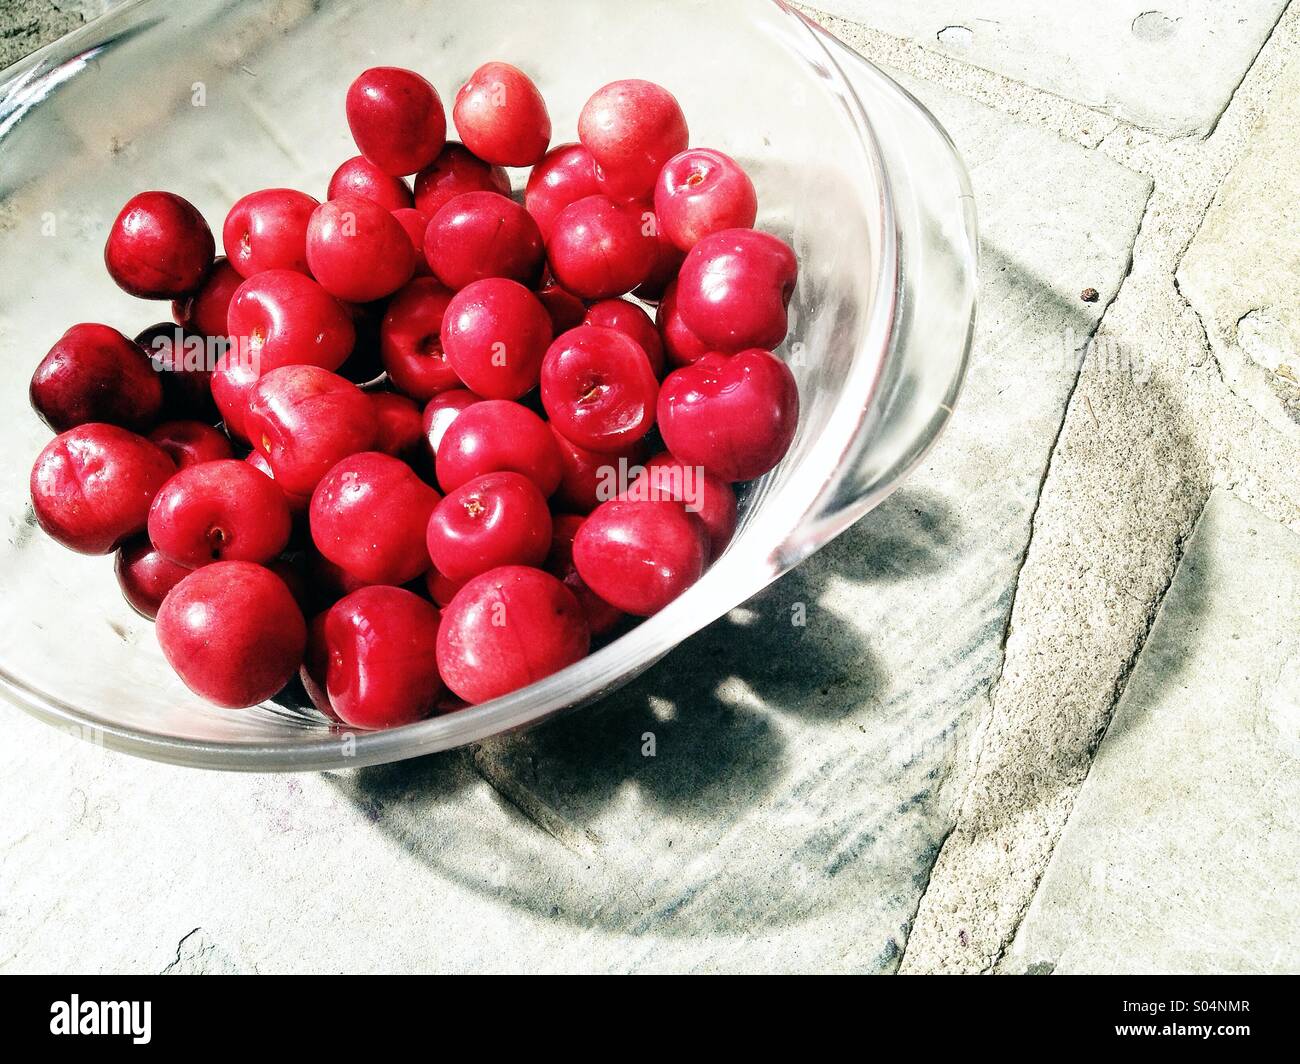 Bowl of cherries Stock Photo